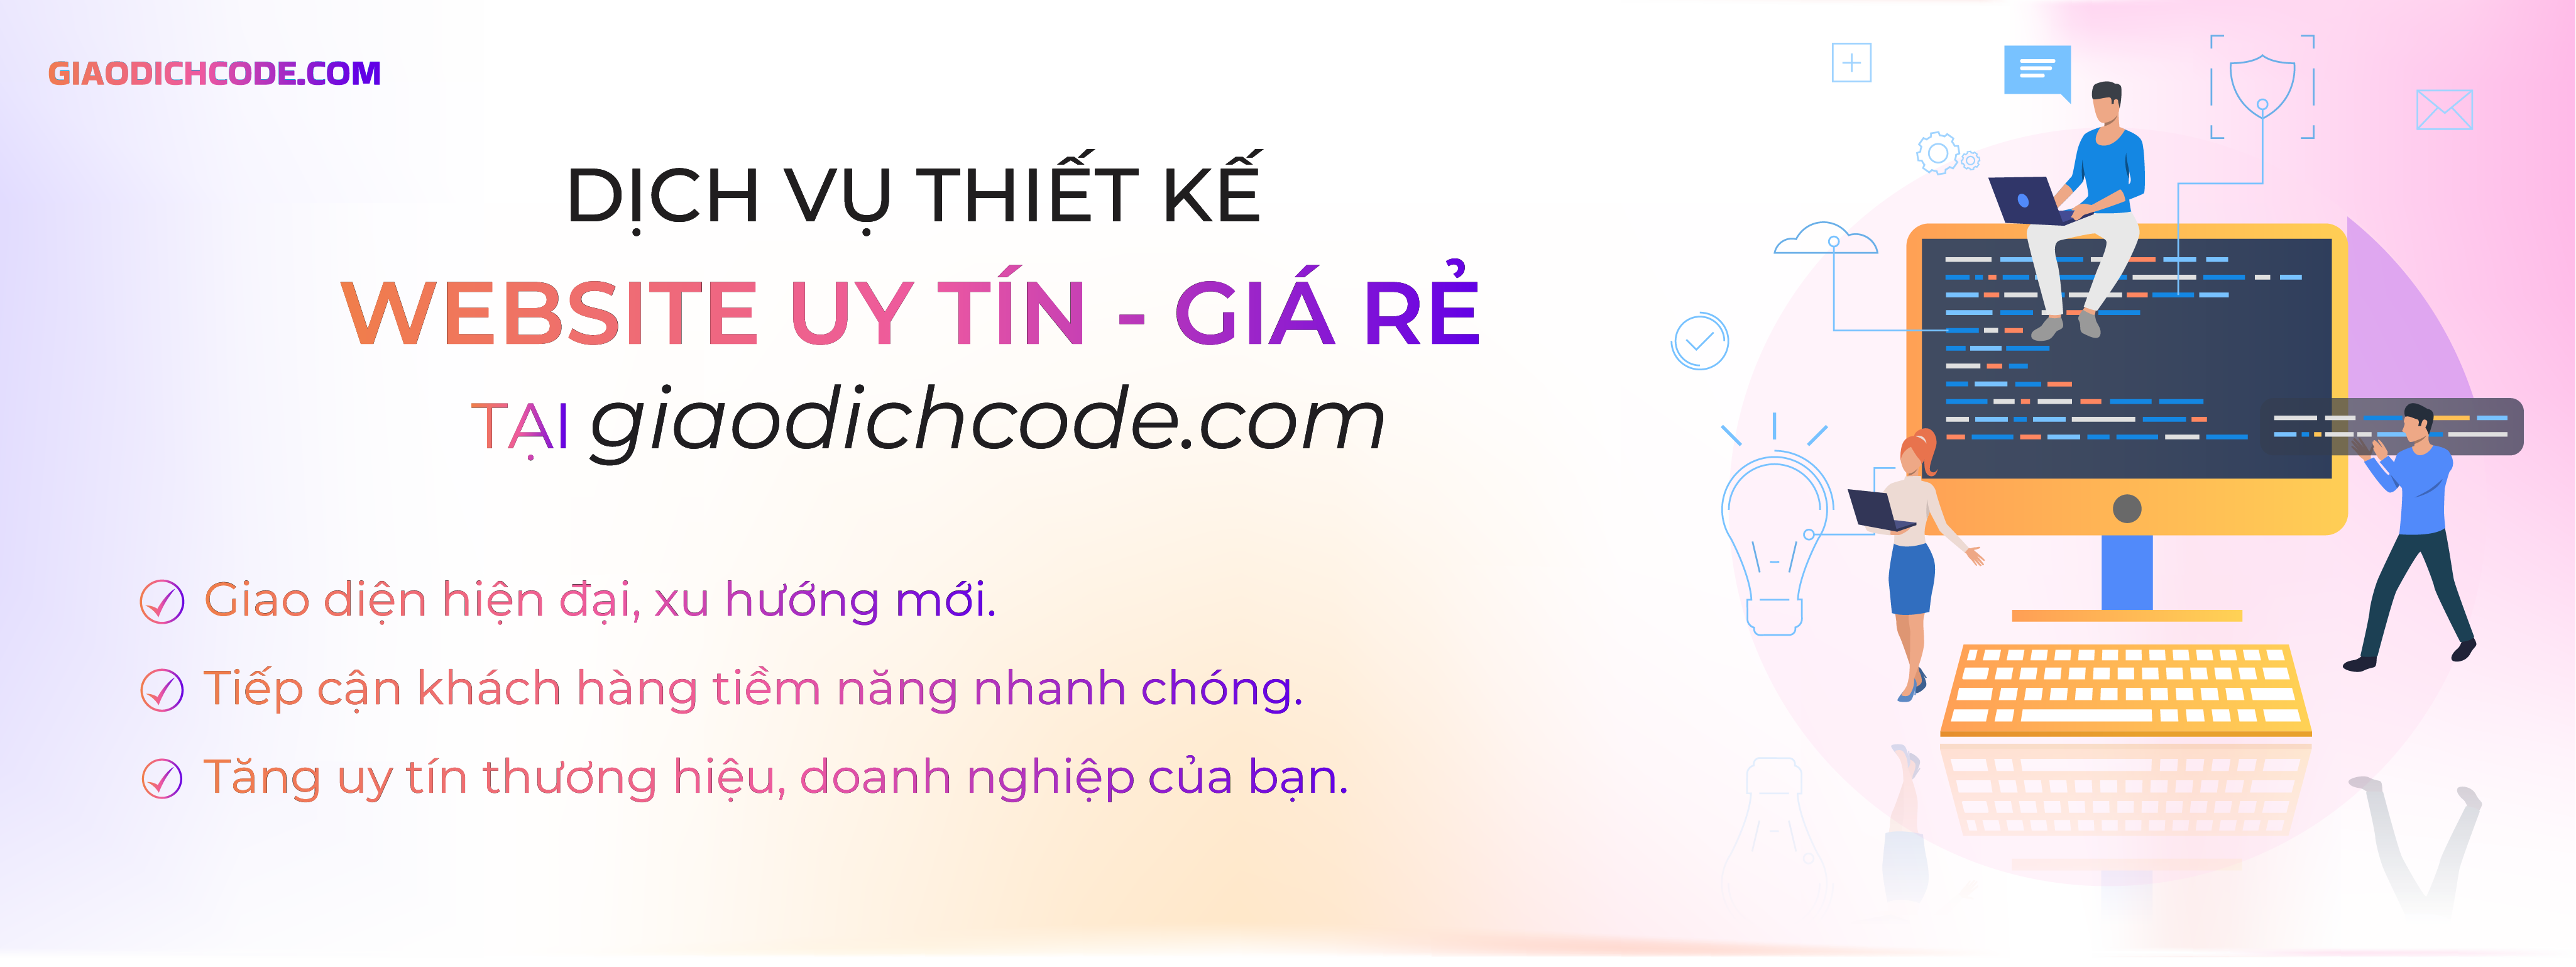 Thiết kế website uy tín - giá rẻ tại giaodichcode.com